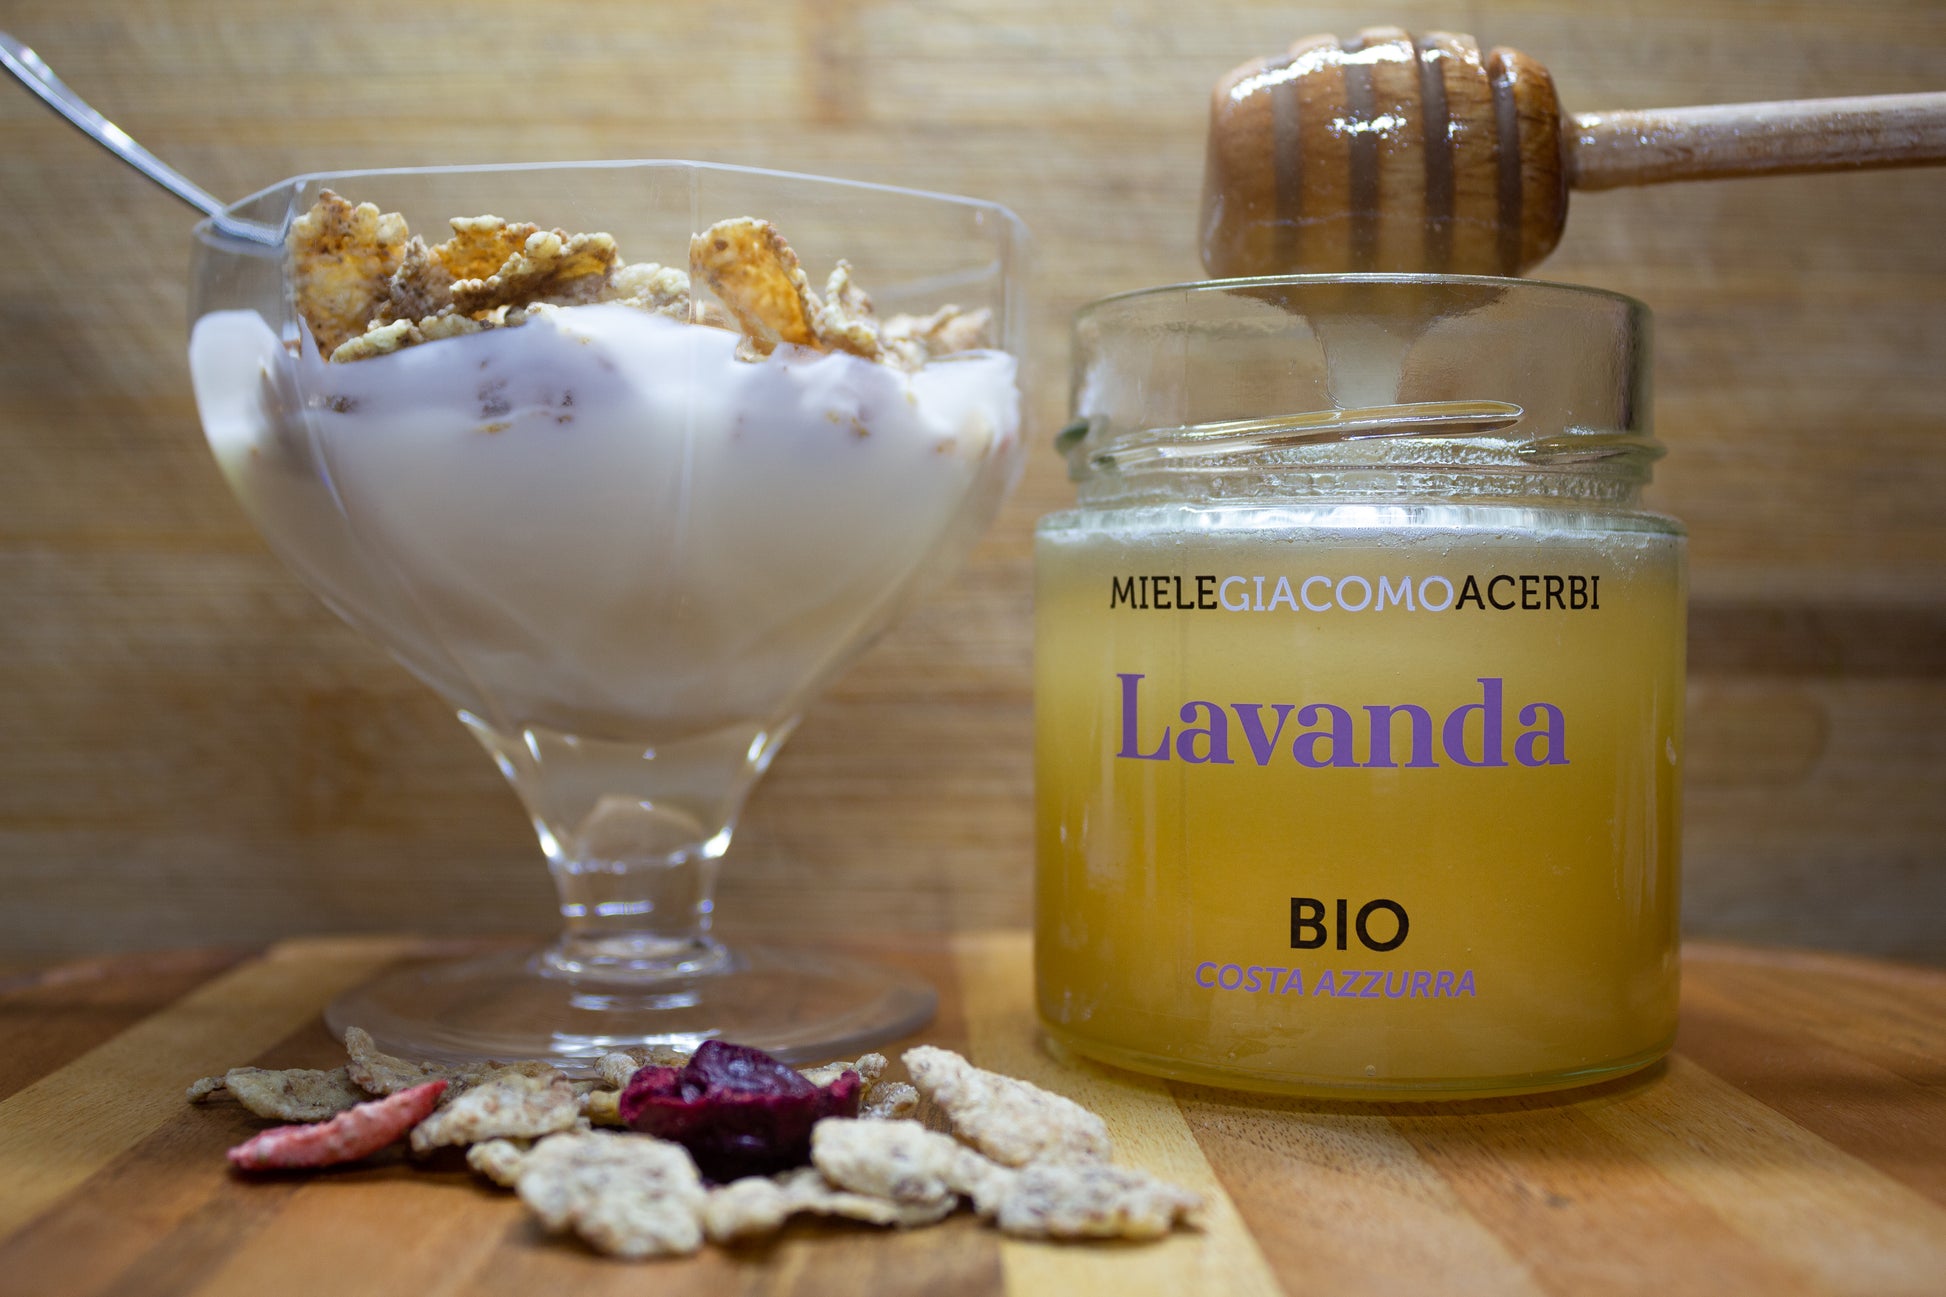 Miele di Lavanda con ambientazione in legno, abbinato con yogurt e fiocchi d'avena